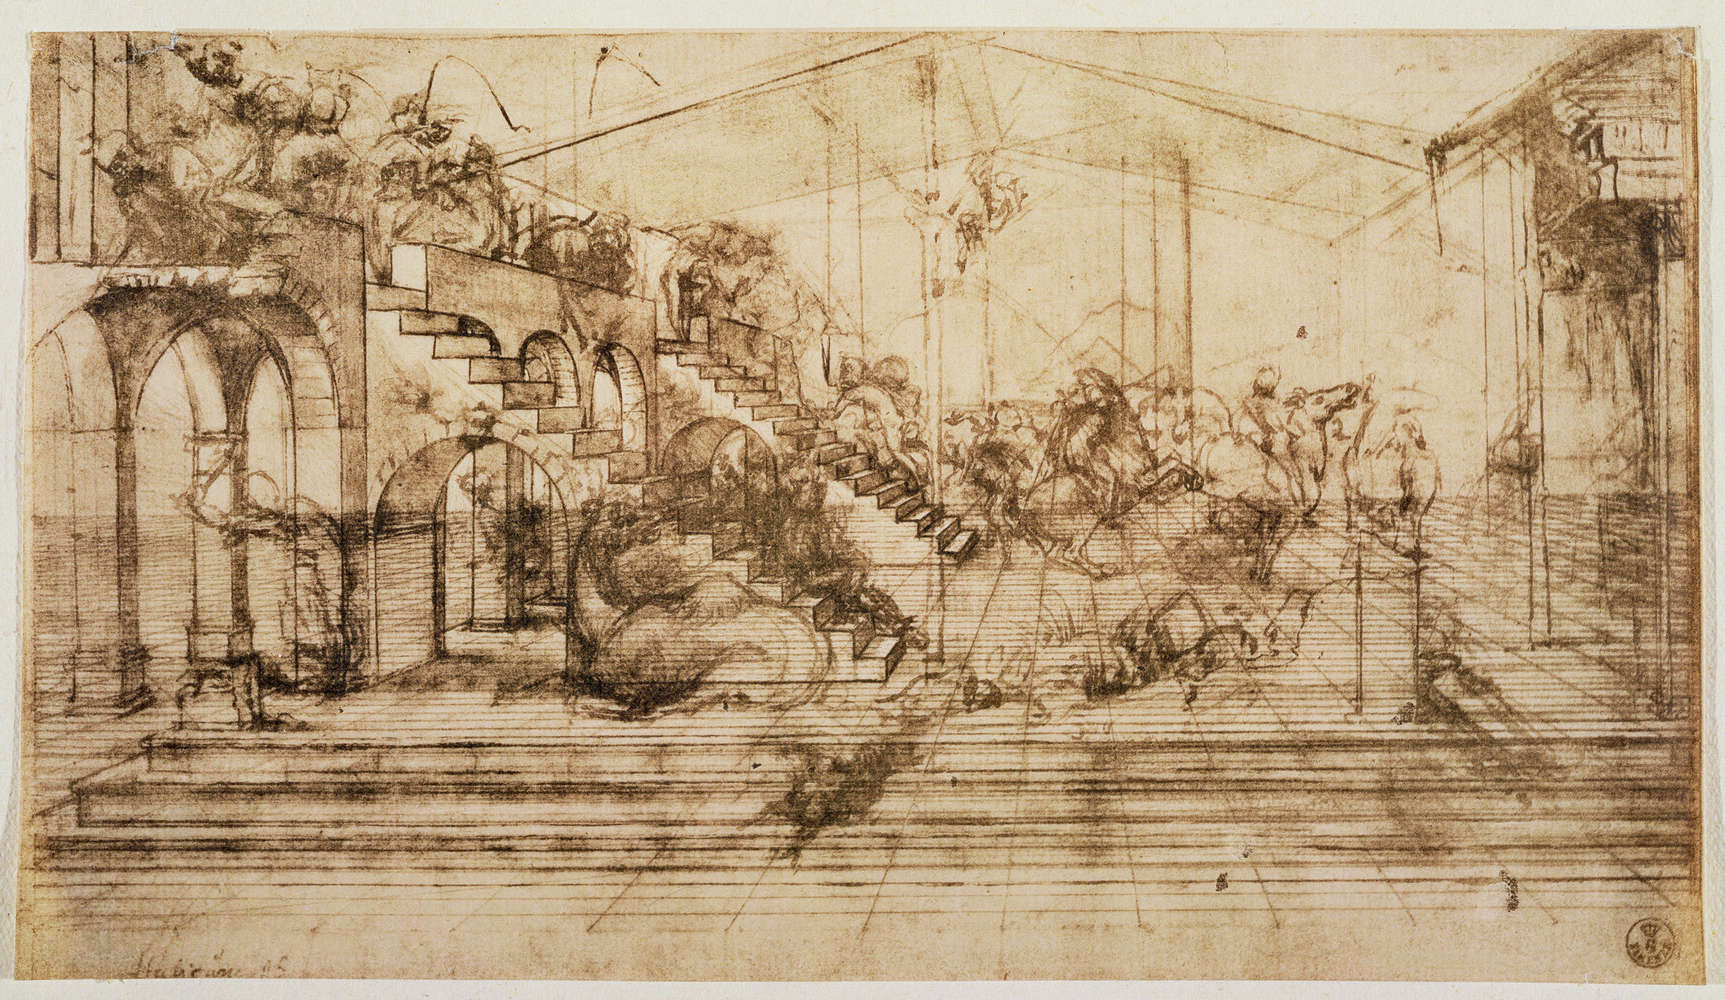             Mural "Estudio de perspectiva para el fondo de la Adoración de los Reyes Magos" de Leonardo da Vinci
        